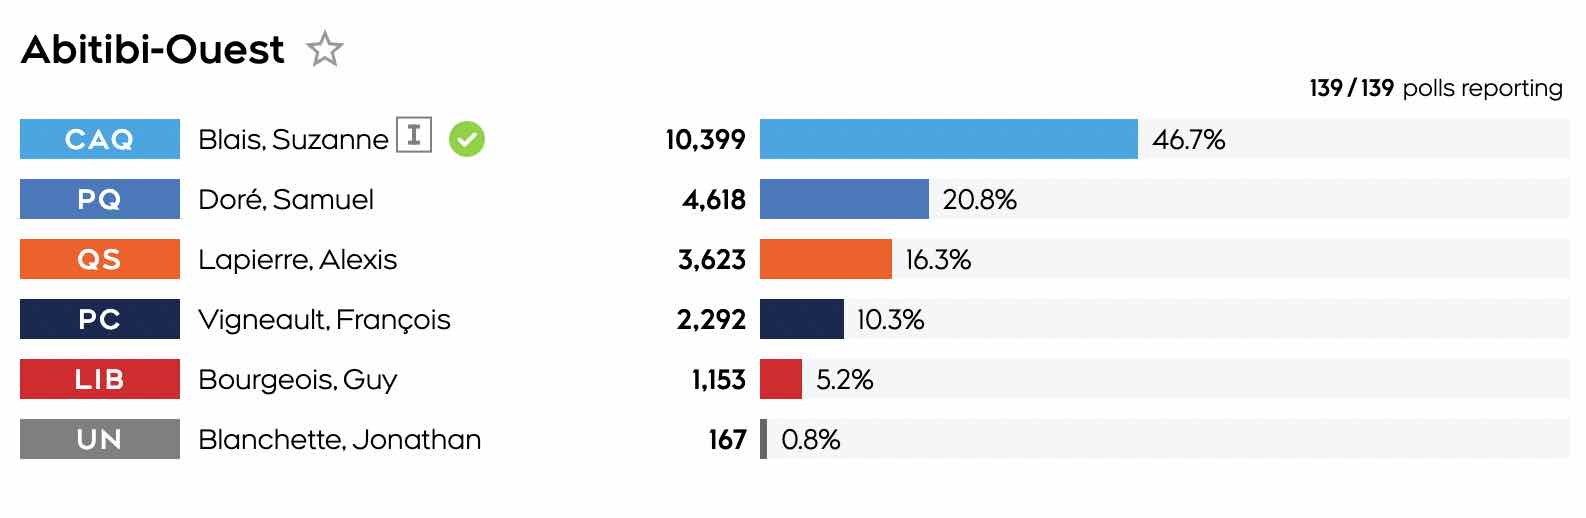 resultats-dans-abitibi-ouest-a-167-votes-pour-jonathan-blanchette.jpg